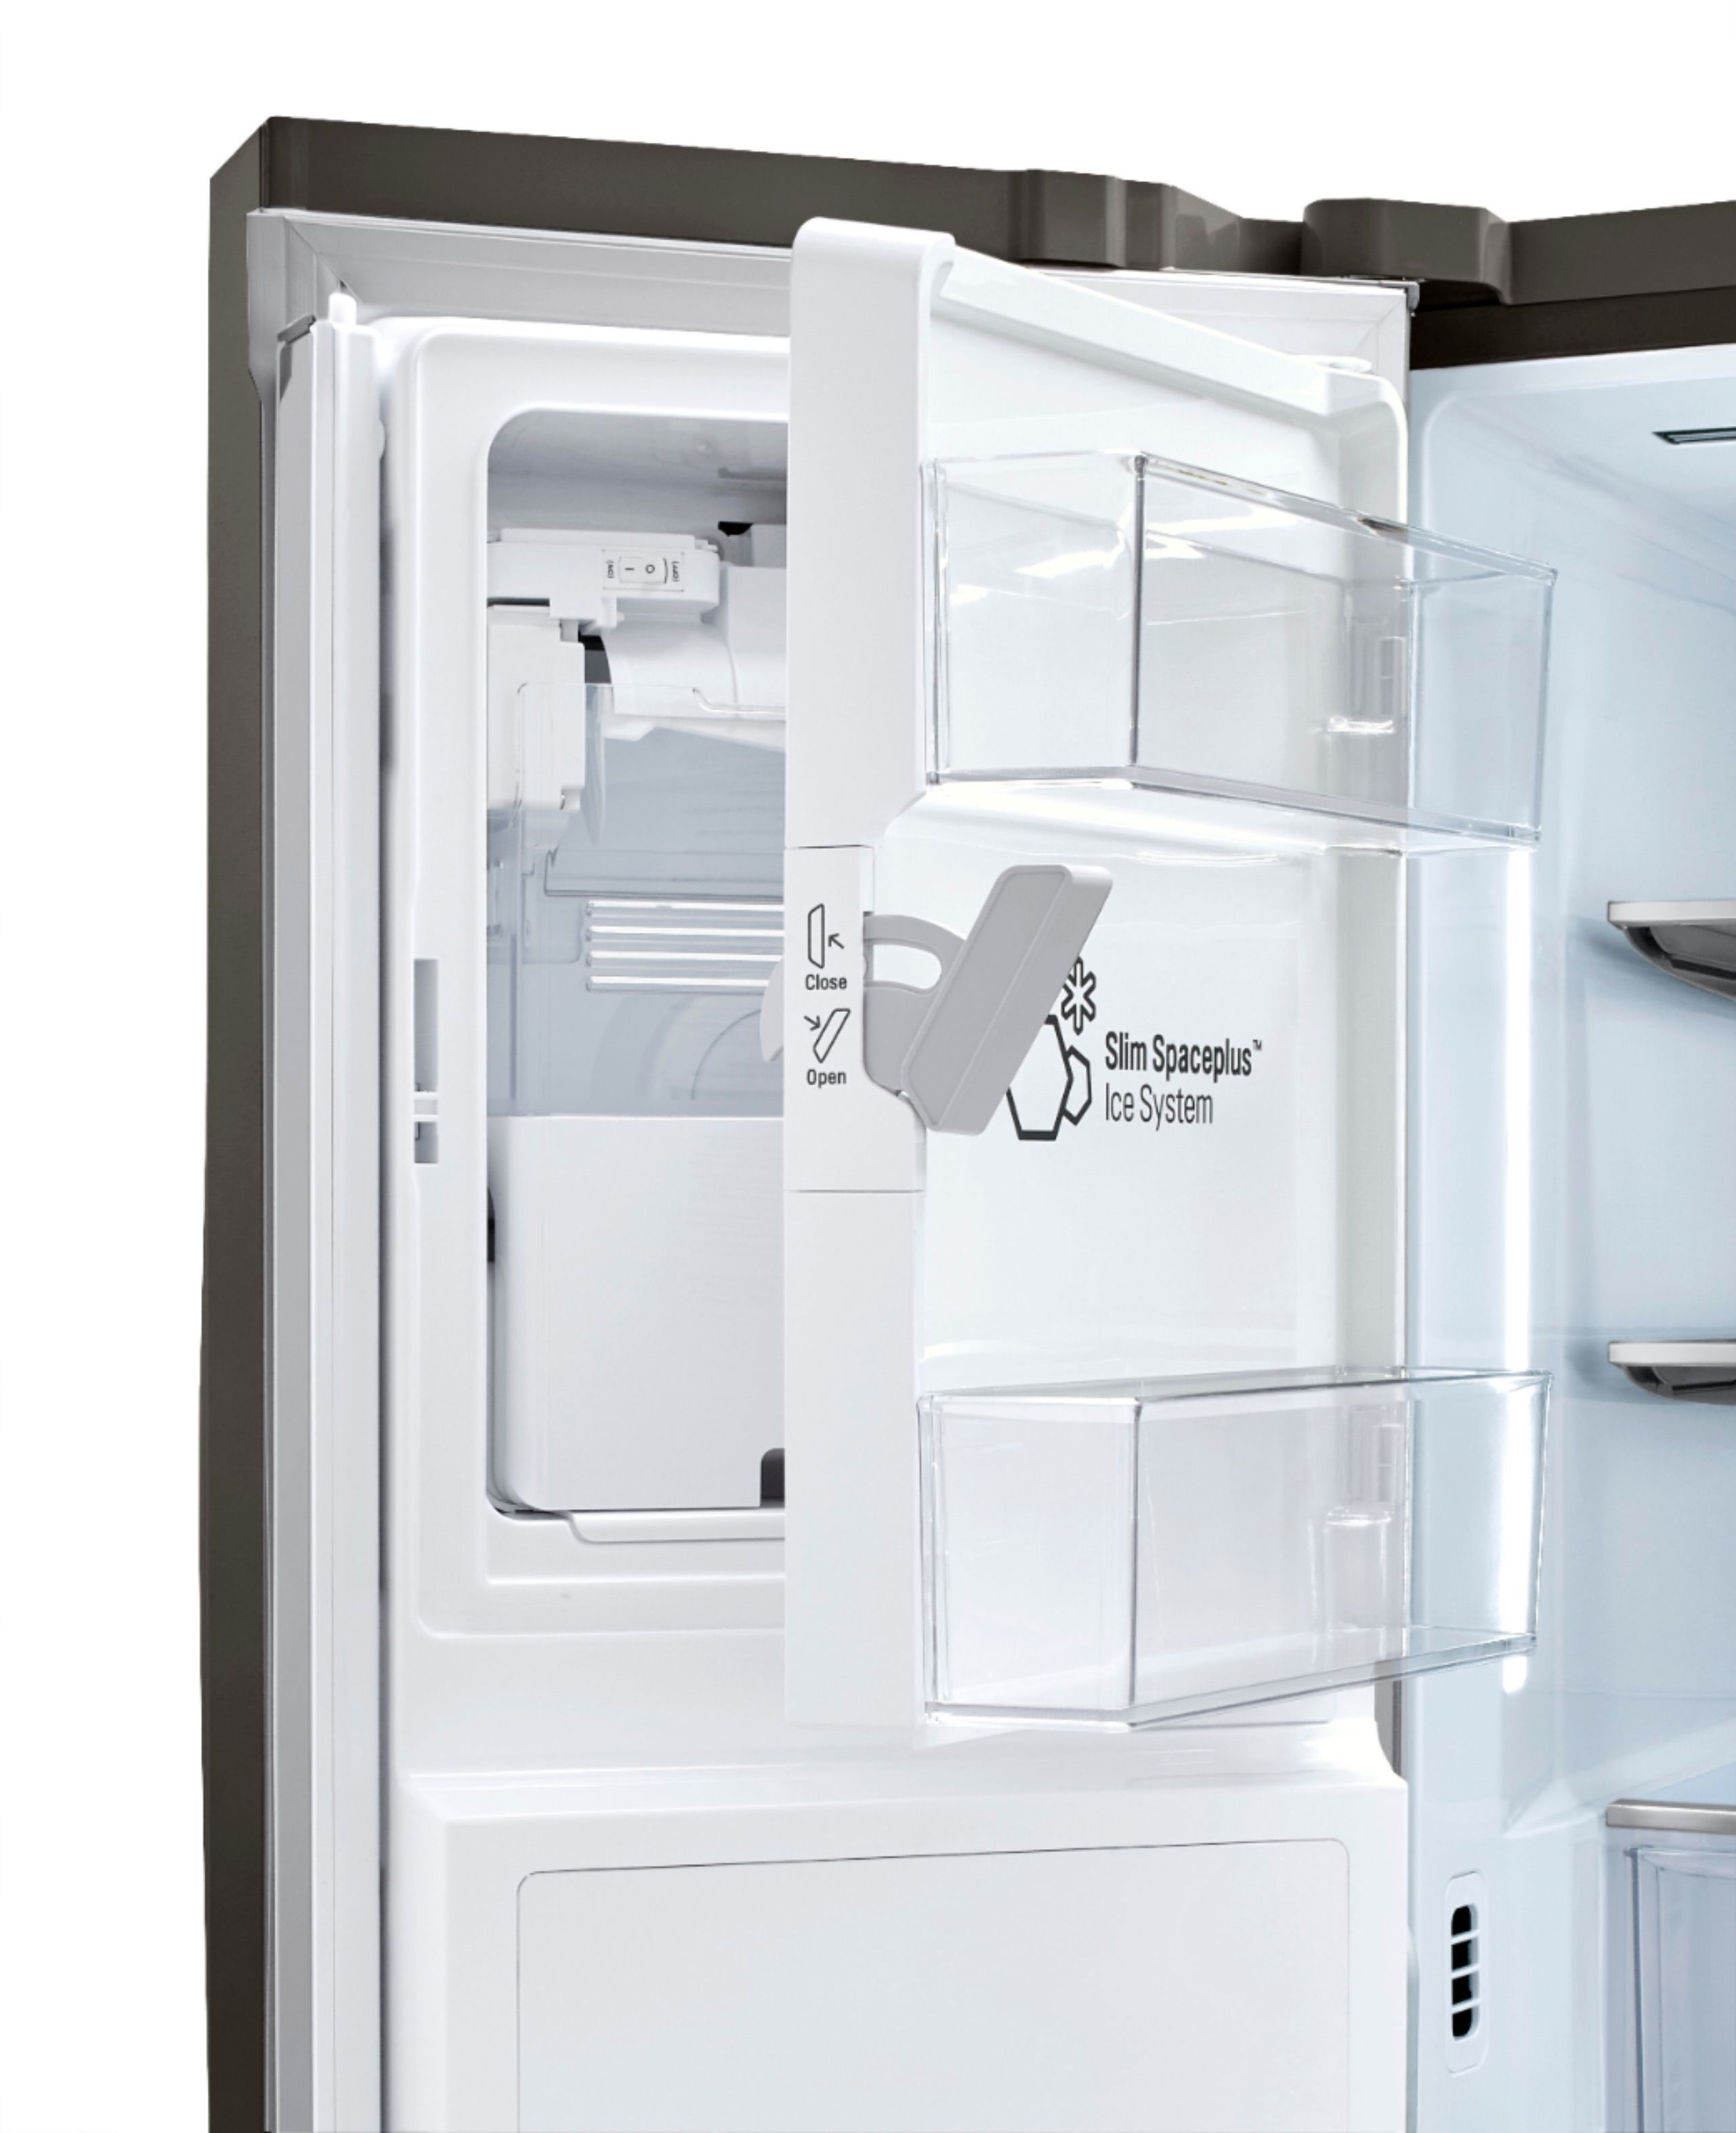 LG LFXC24796D 36 Inch Counter Depth Smart French Door Refrigerator with  23.5 Cu. Ft. Capacity, InstaView™ Door-in-Door®, Dual Evaporators,  SpillProof™